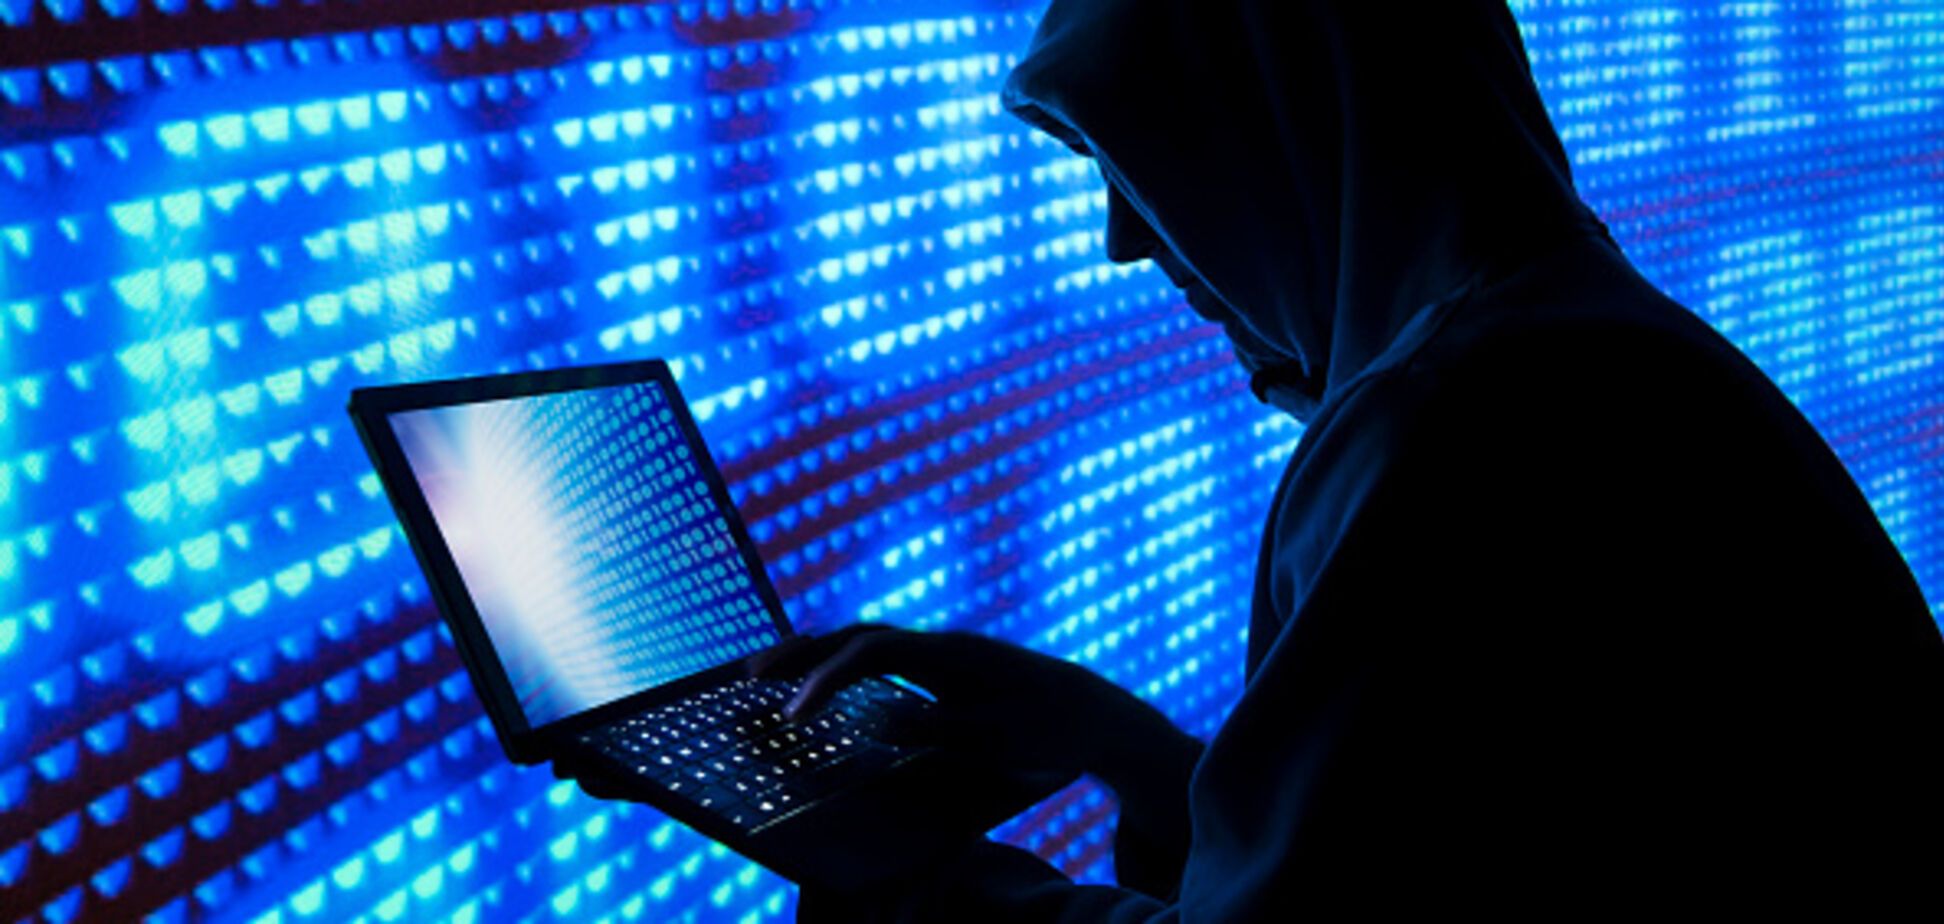 Заарештований США хакер заявив, що працював на 'Єдину Росію' і володіє секретними даними